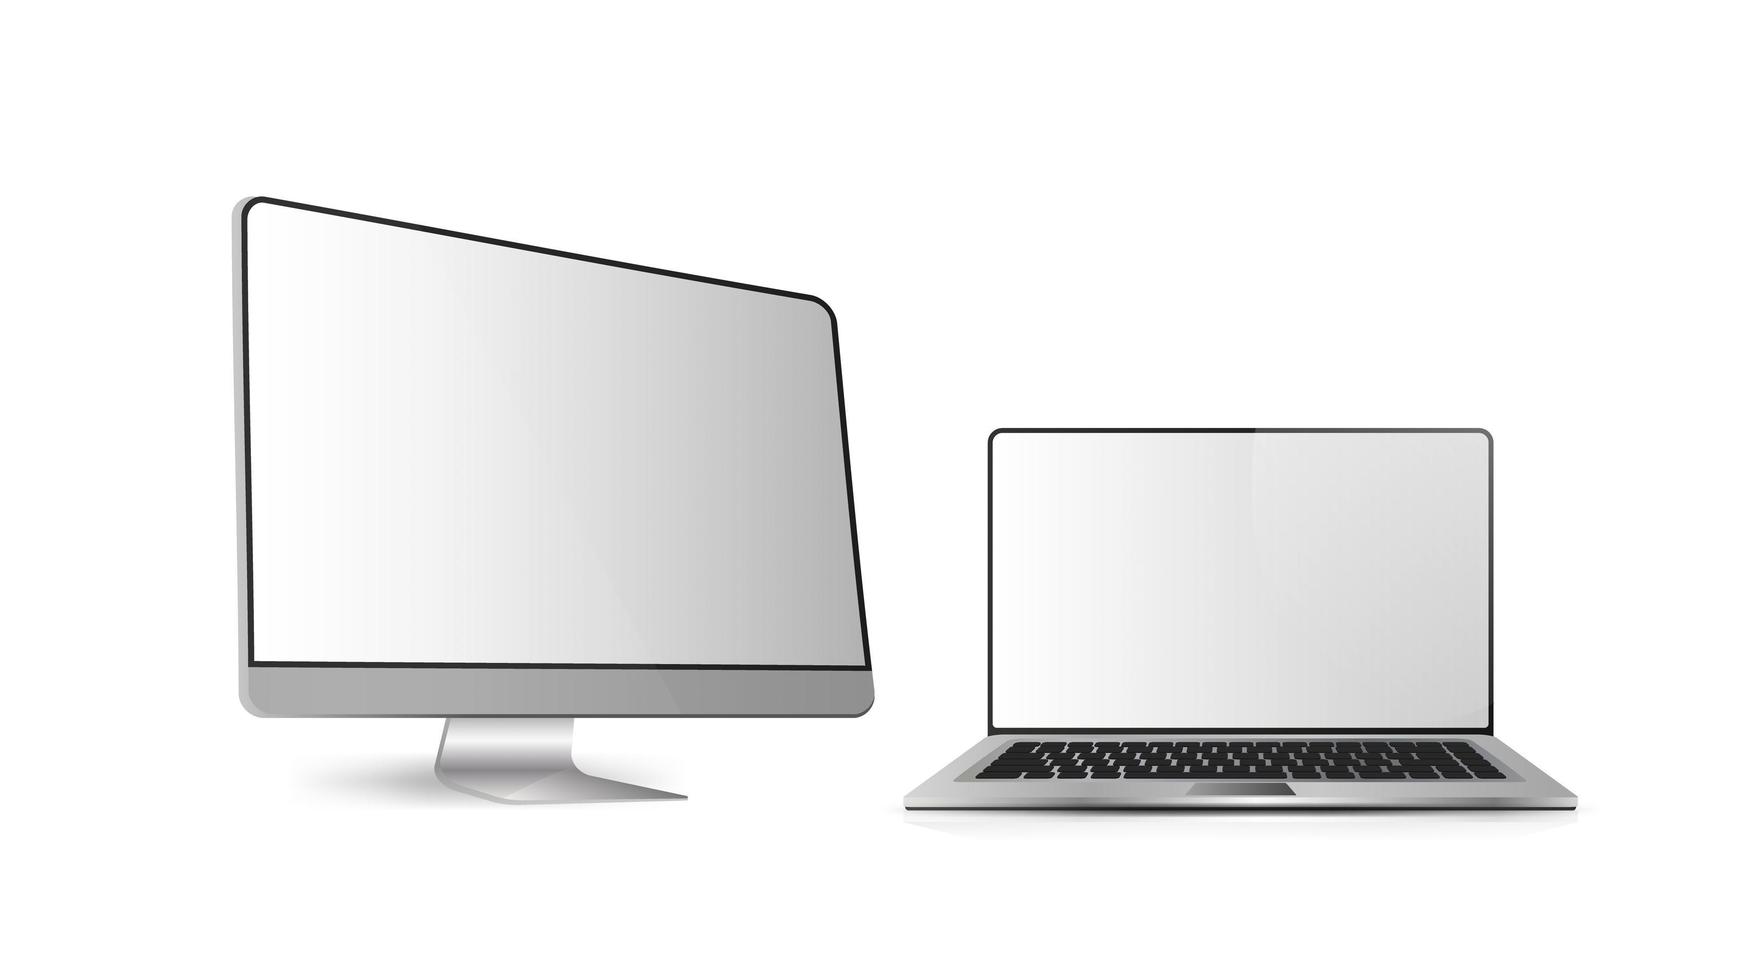 monitor para computador. laptop aberto moderno. conjunto de equipamentos de informática isolado em um fundo branco. vetor realista.